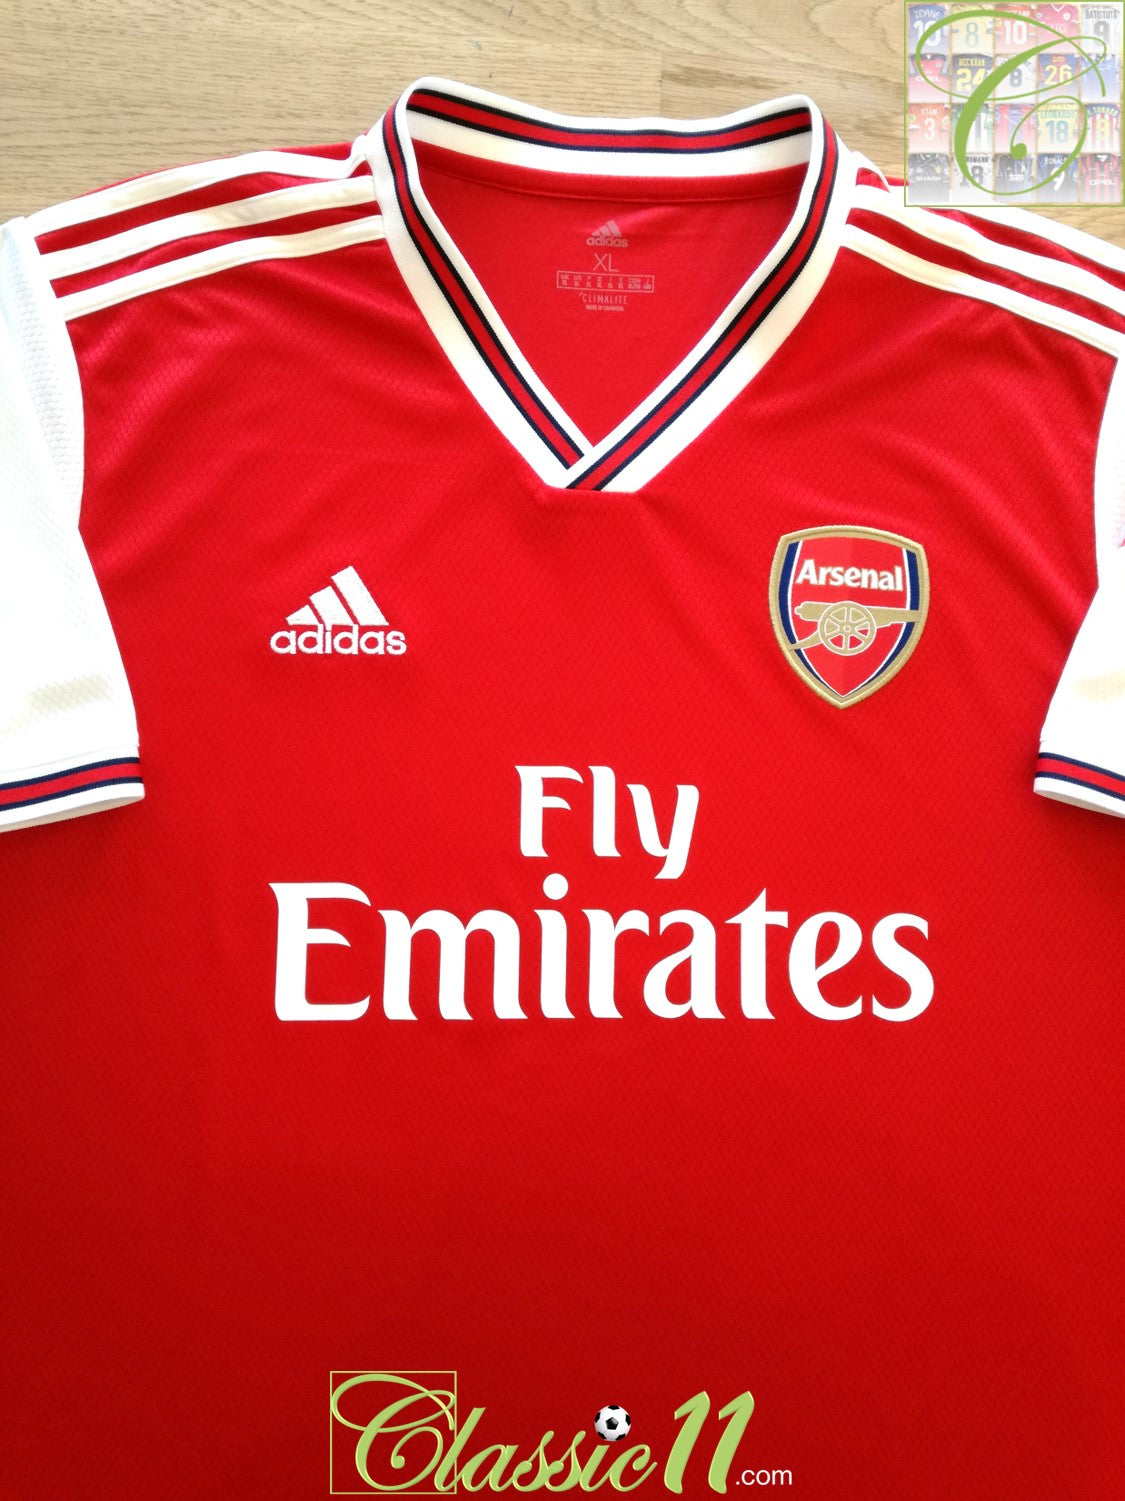 Druif Slechte factor Gelijkmatig 2019/20 Arsenal Home Football Shirt / Official Adidas Soccer Jersey |  Classic Football Shirts